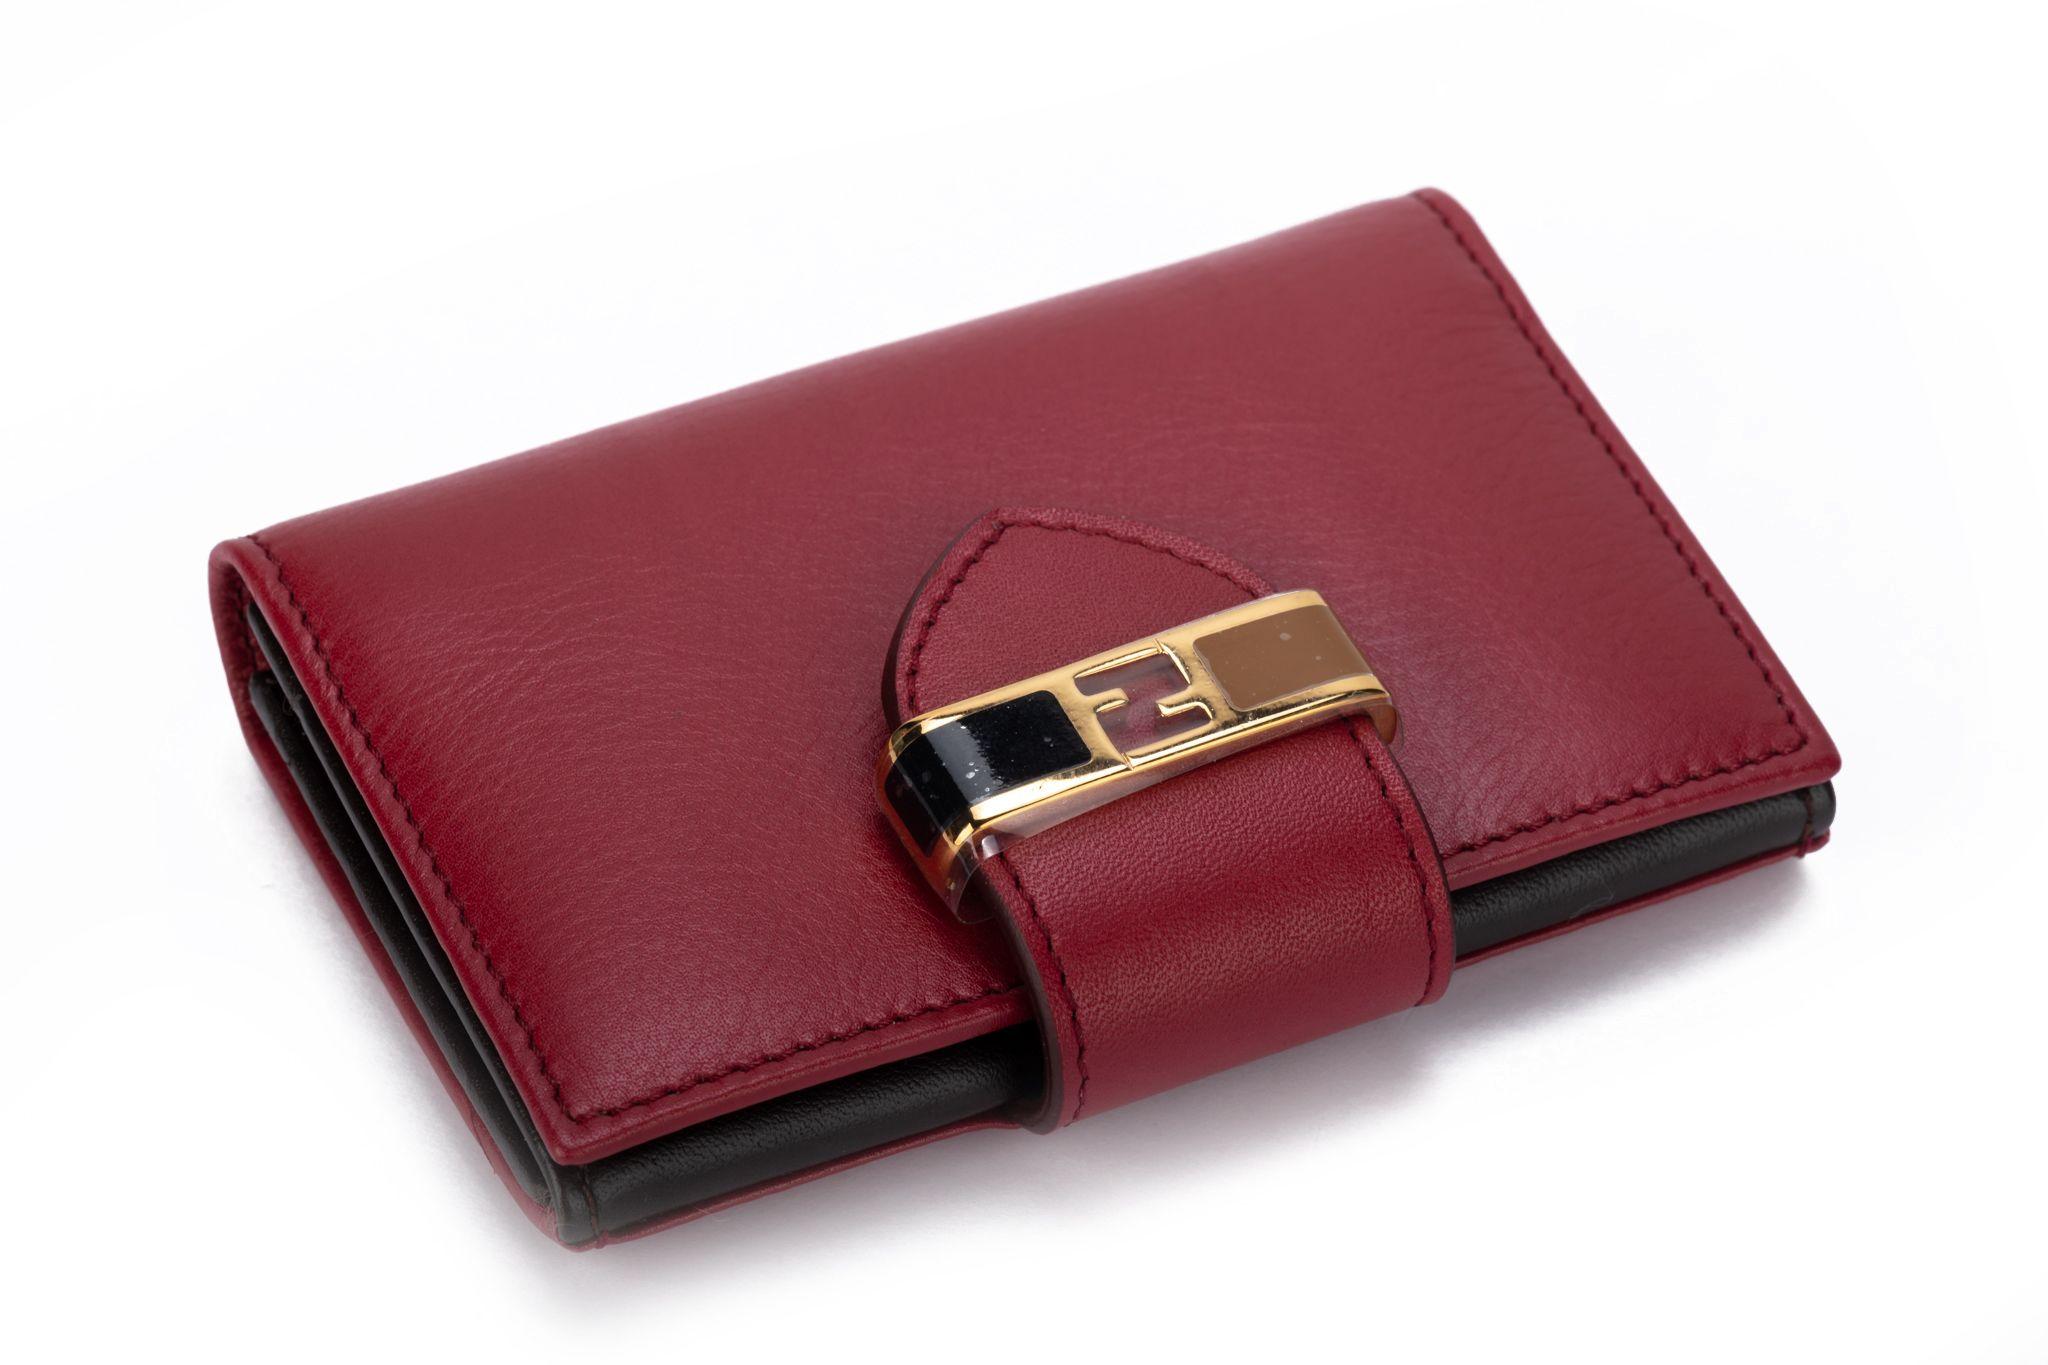 Fendi neue Burgunder Kalbfleisch Brieftasche mit Emaille und Gold Hardware .
Box und Original-Schutzumschlag.